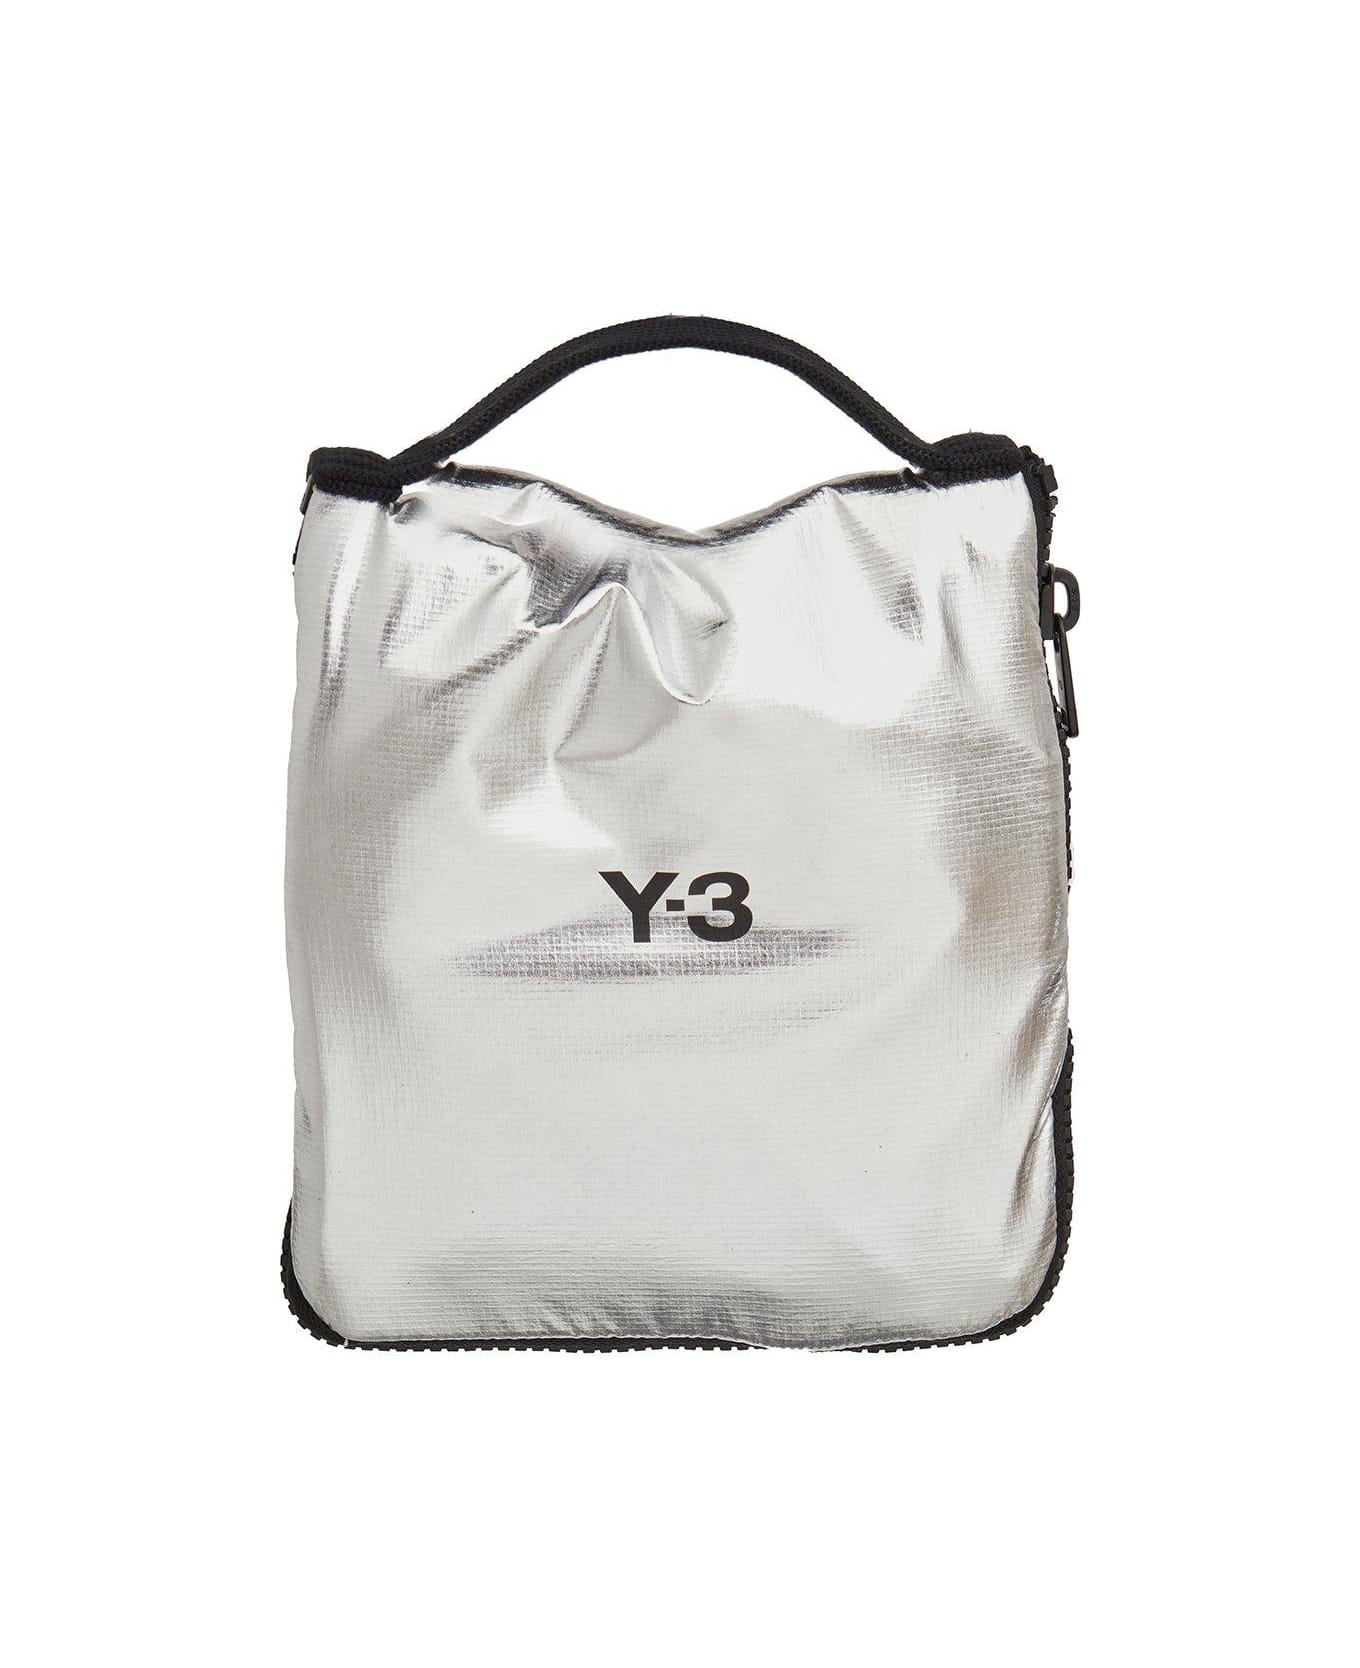 Y-3 Logo Printed Zip-around Packable Tote Bag - Silver